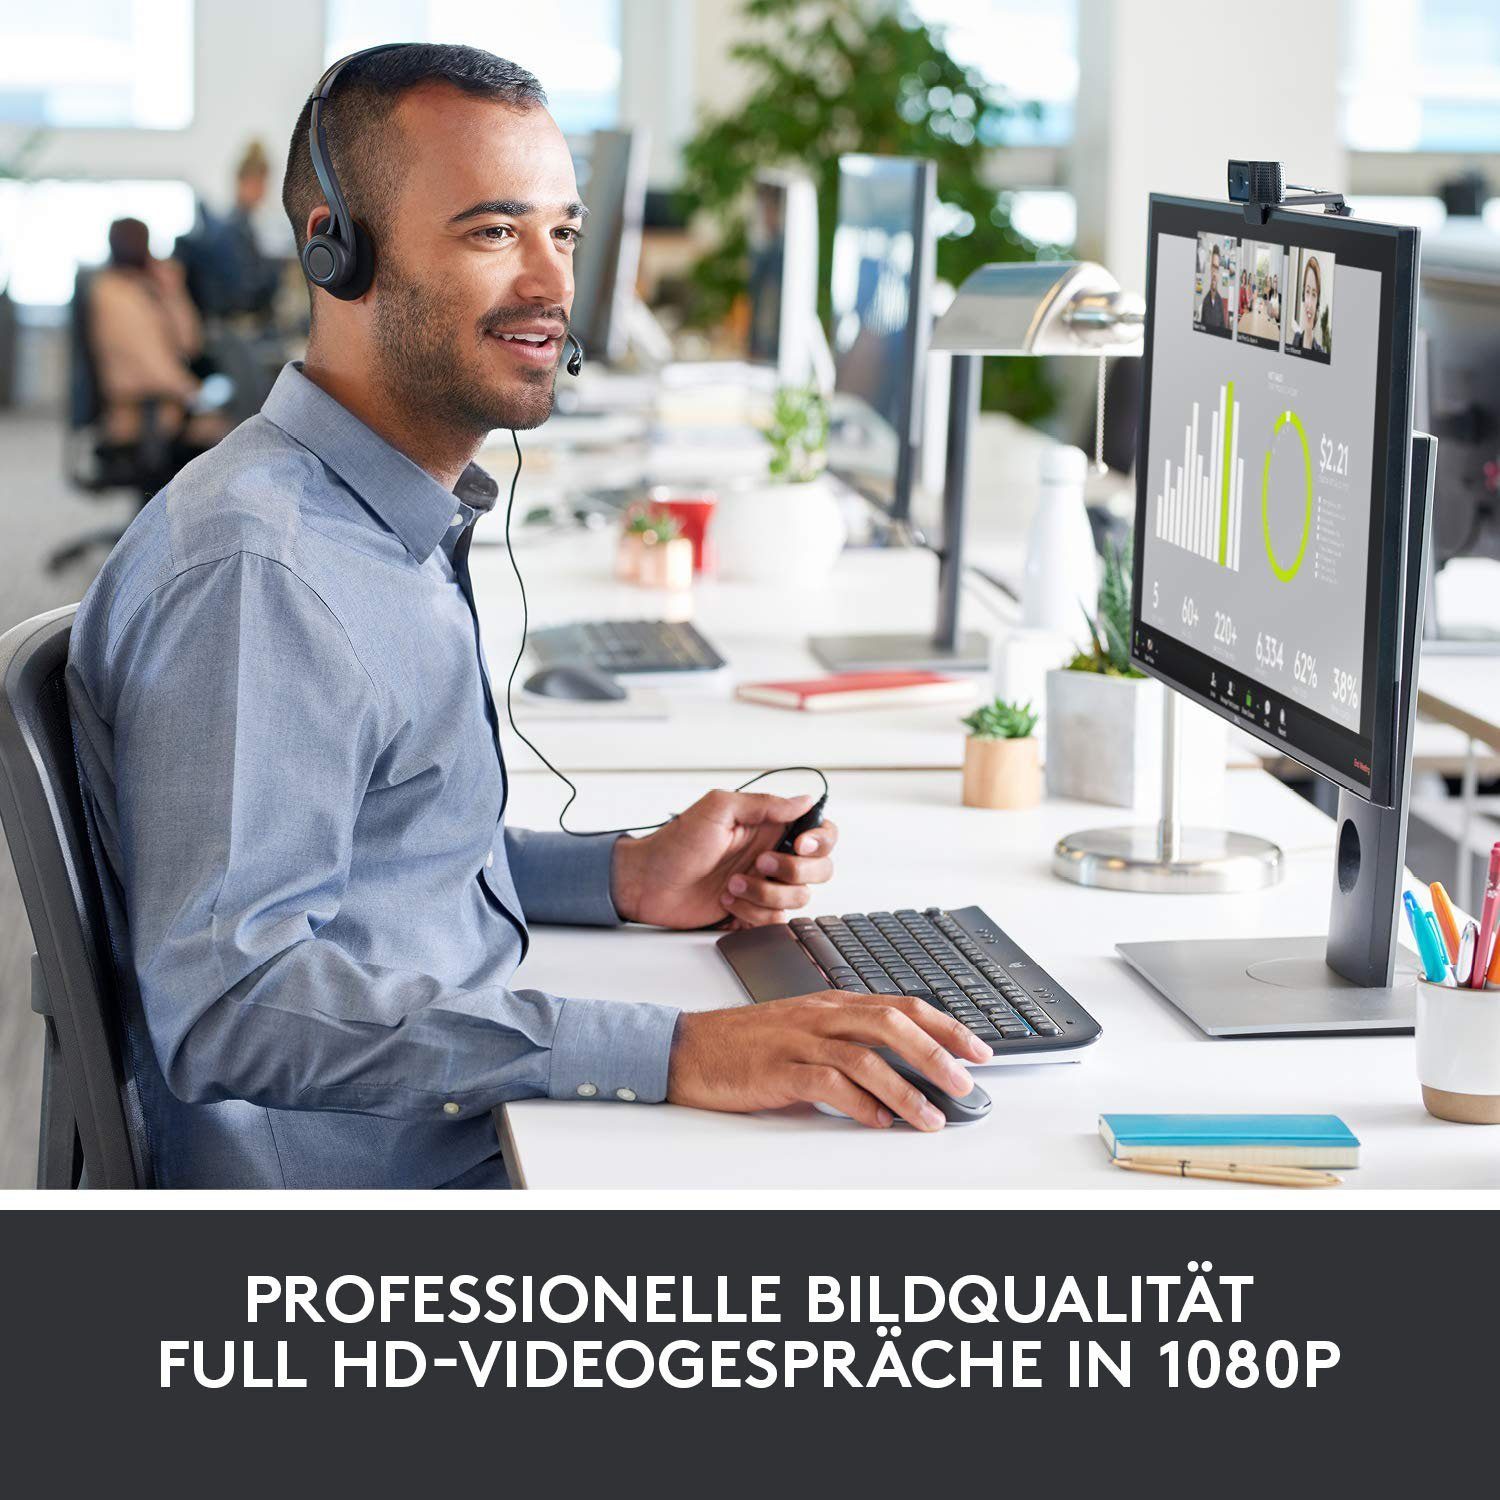 (Full HD) HD C920 PRO Webcam Logitech